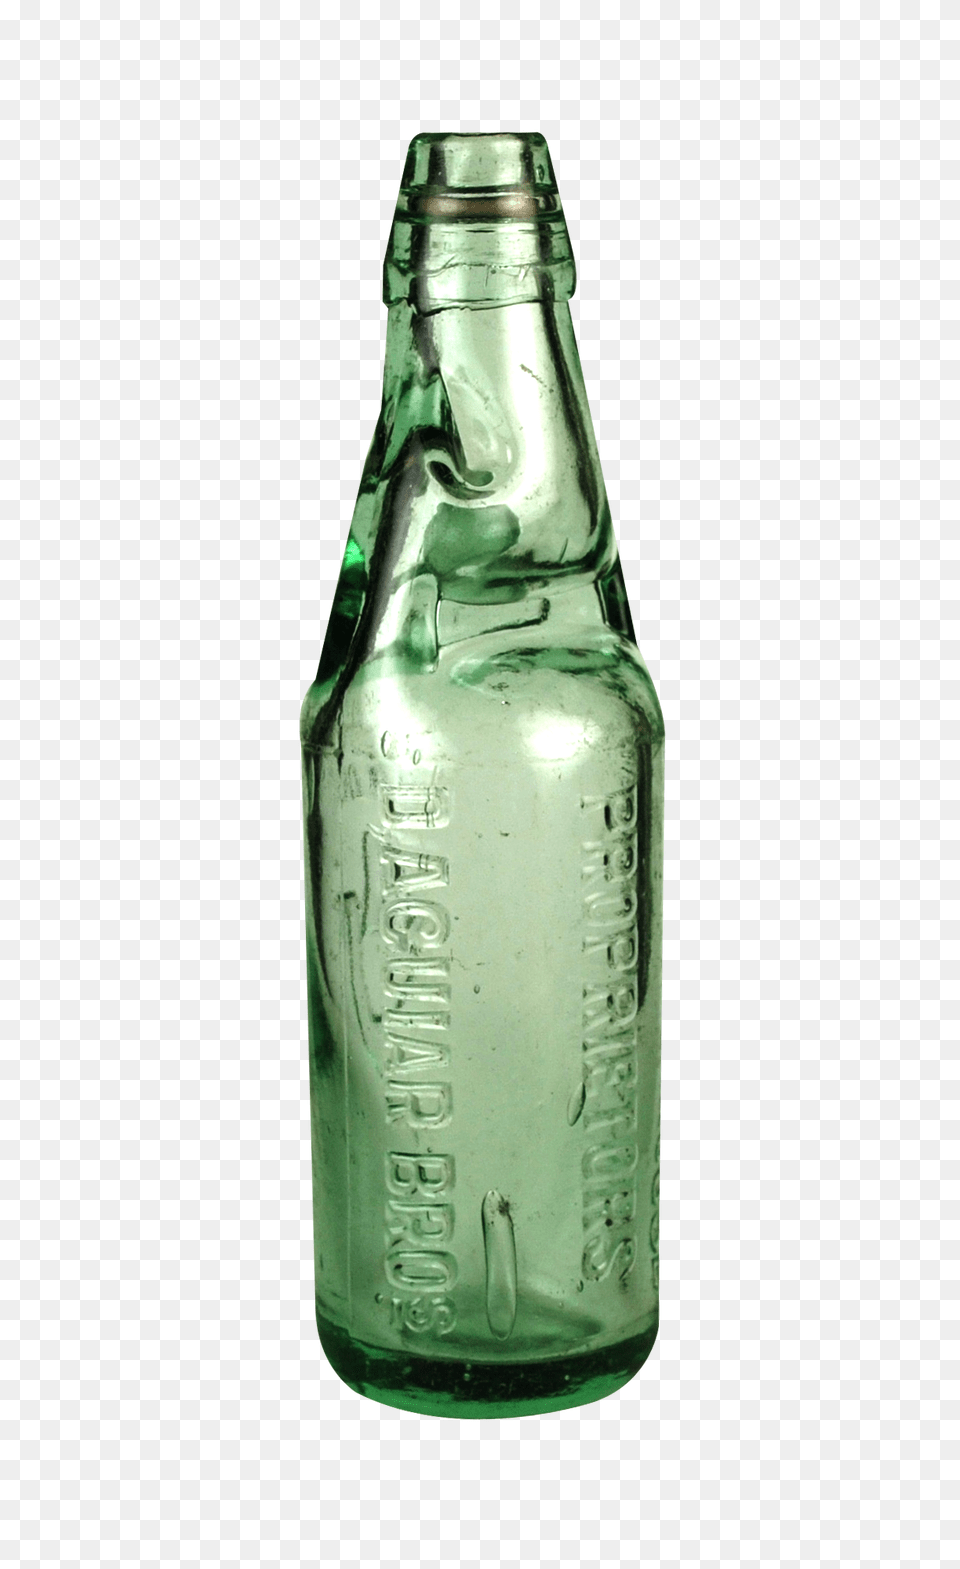 Pngpix Com Codd Bottle Image, Alcohol, Beer, Beverage, Liquor Free Transparent Png